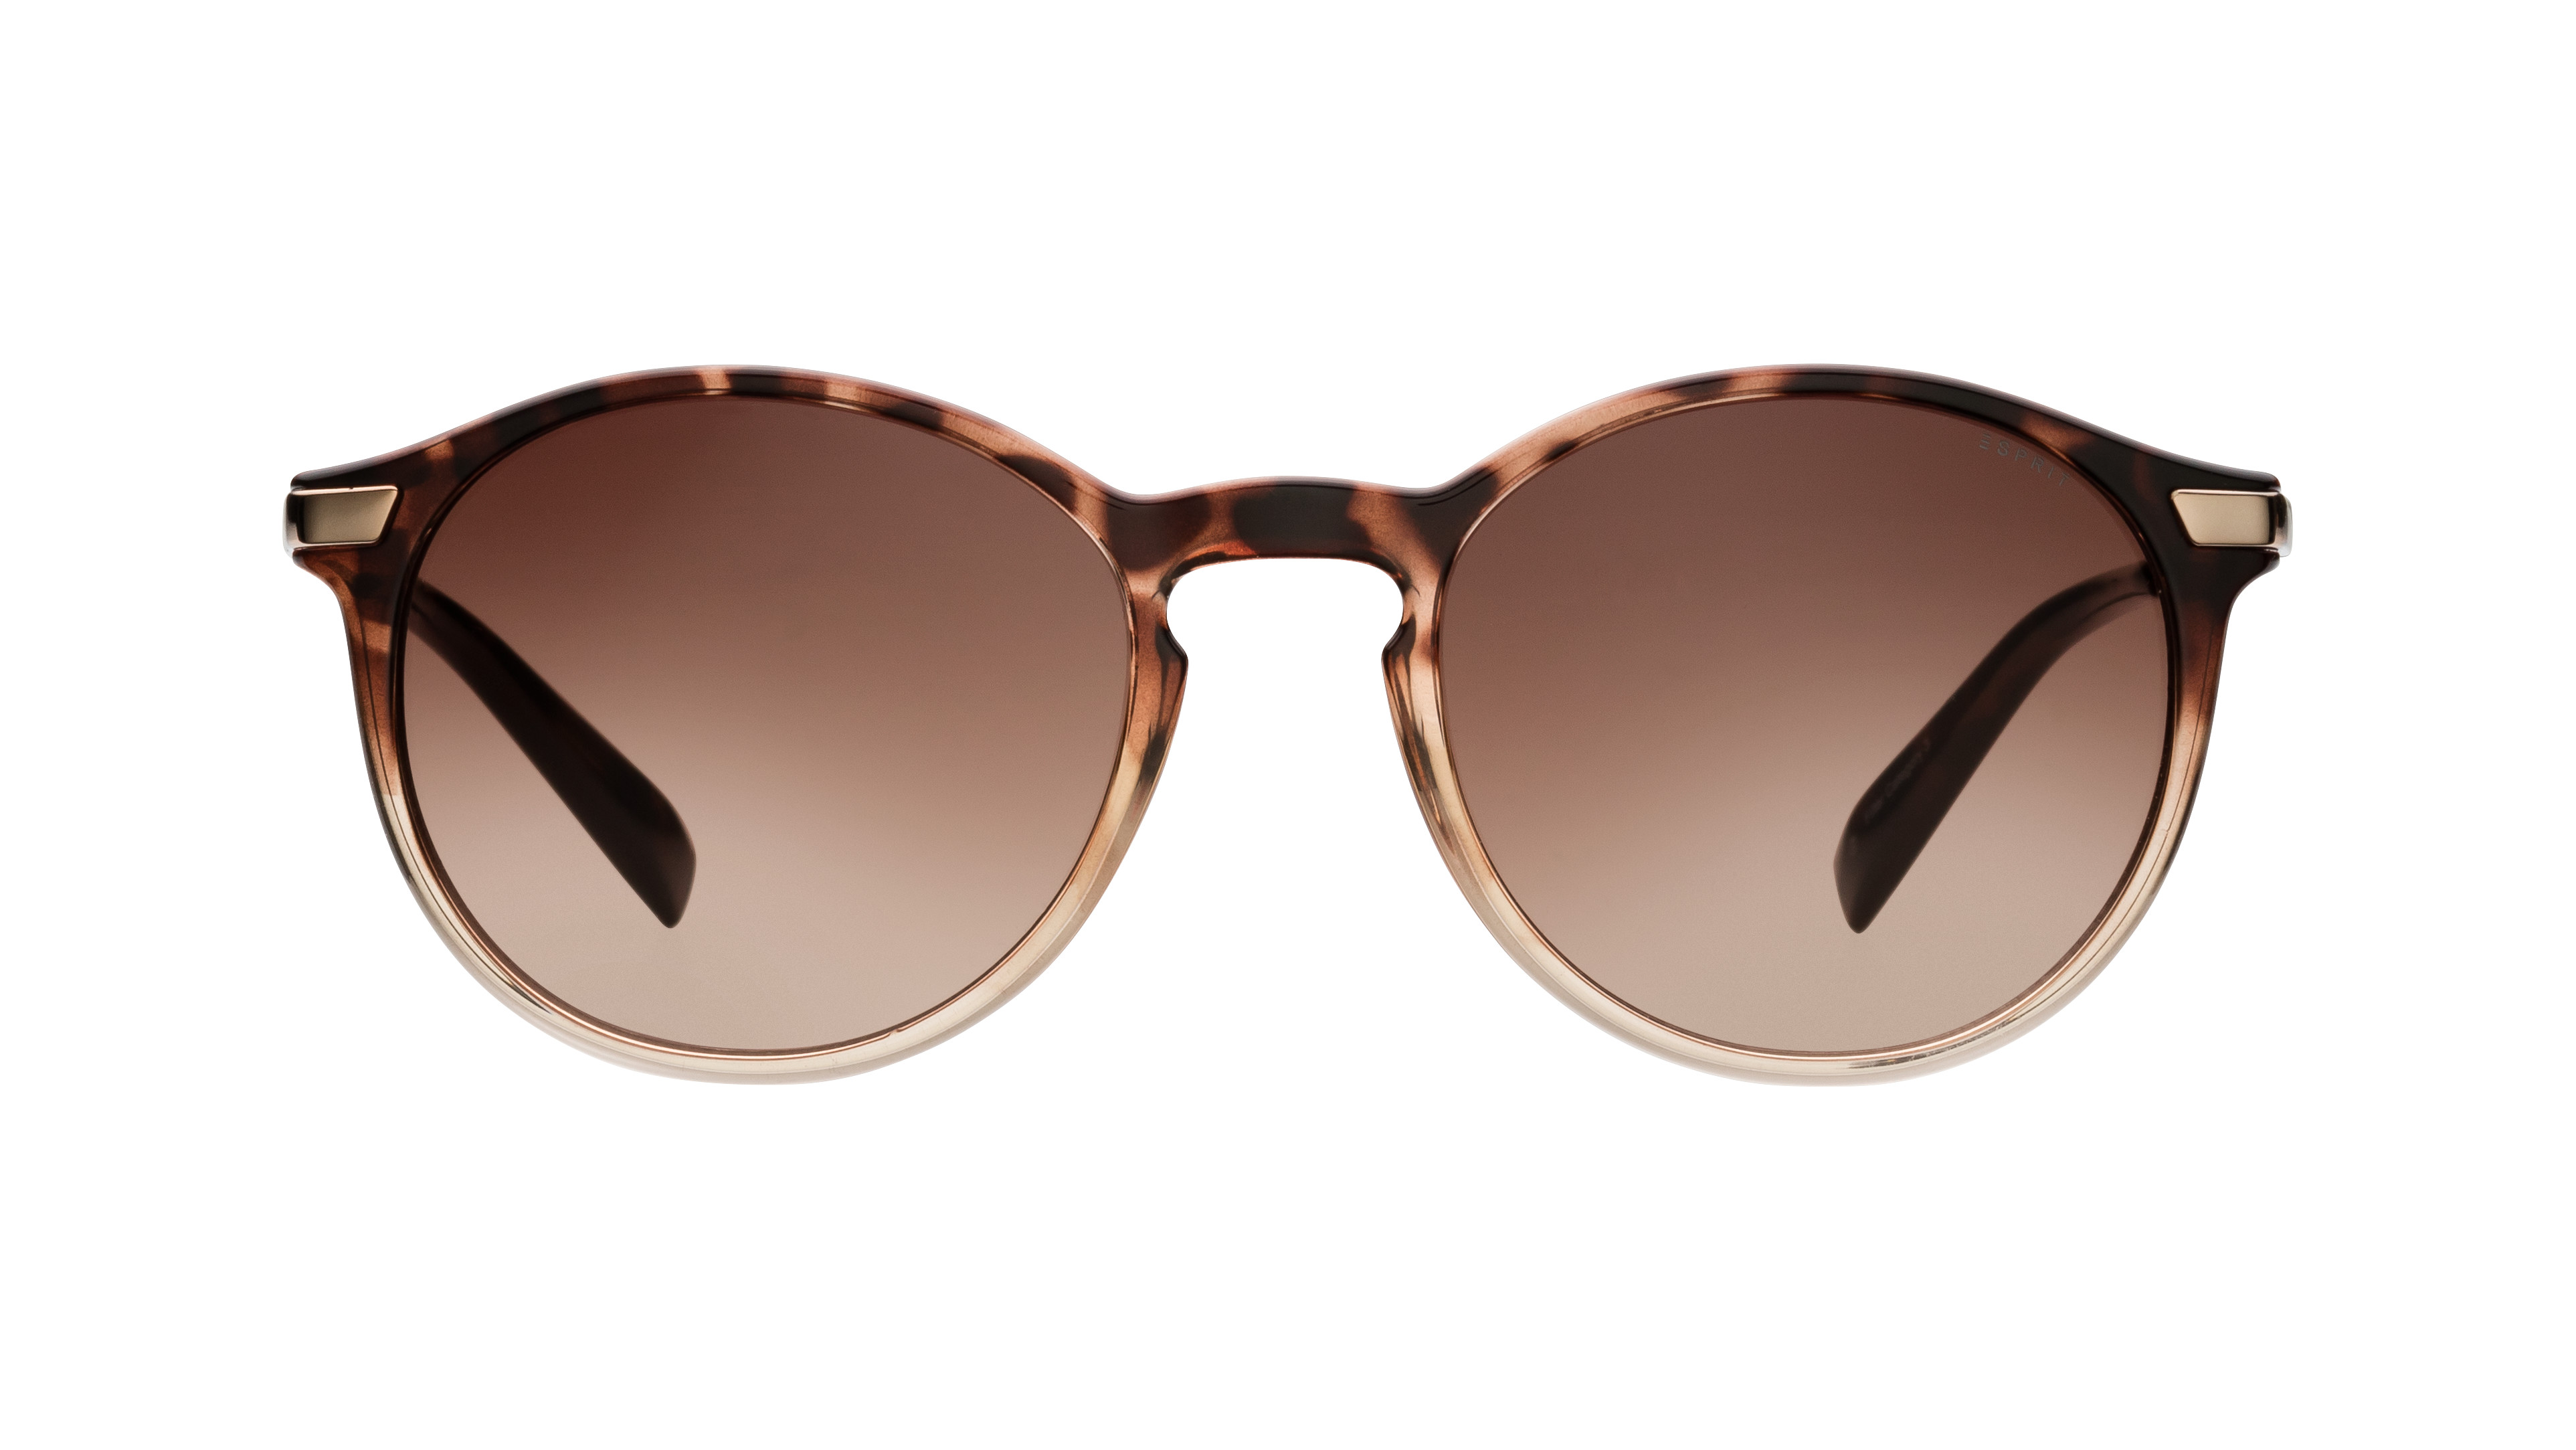 [products.image.front] Esprit 17971 545 Sonnenbrille